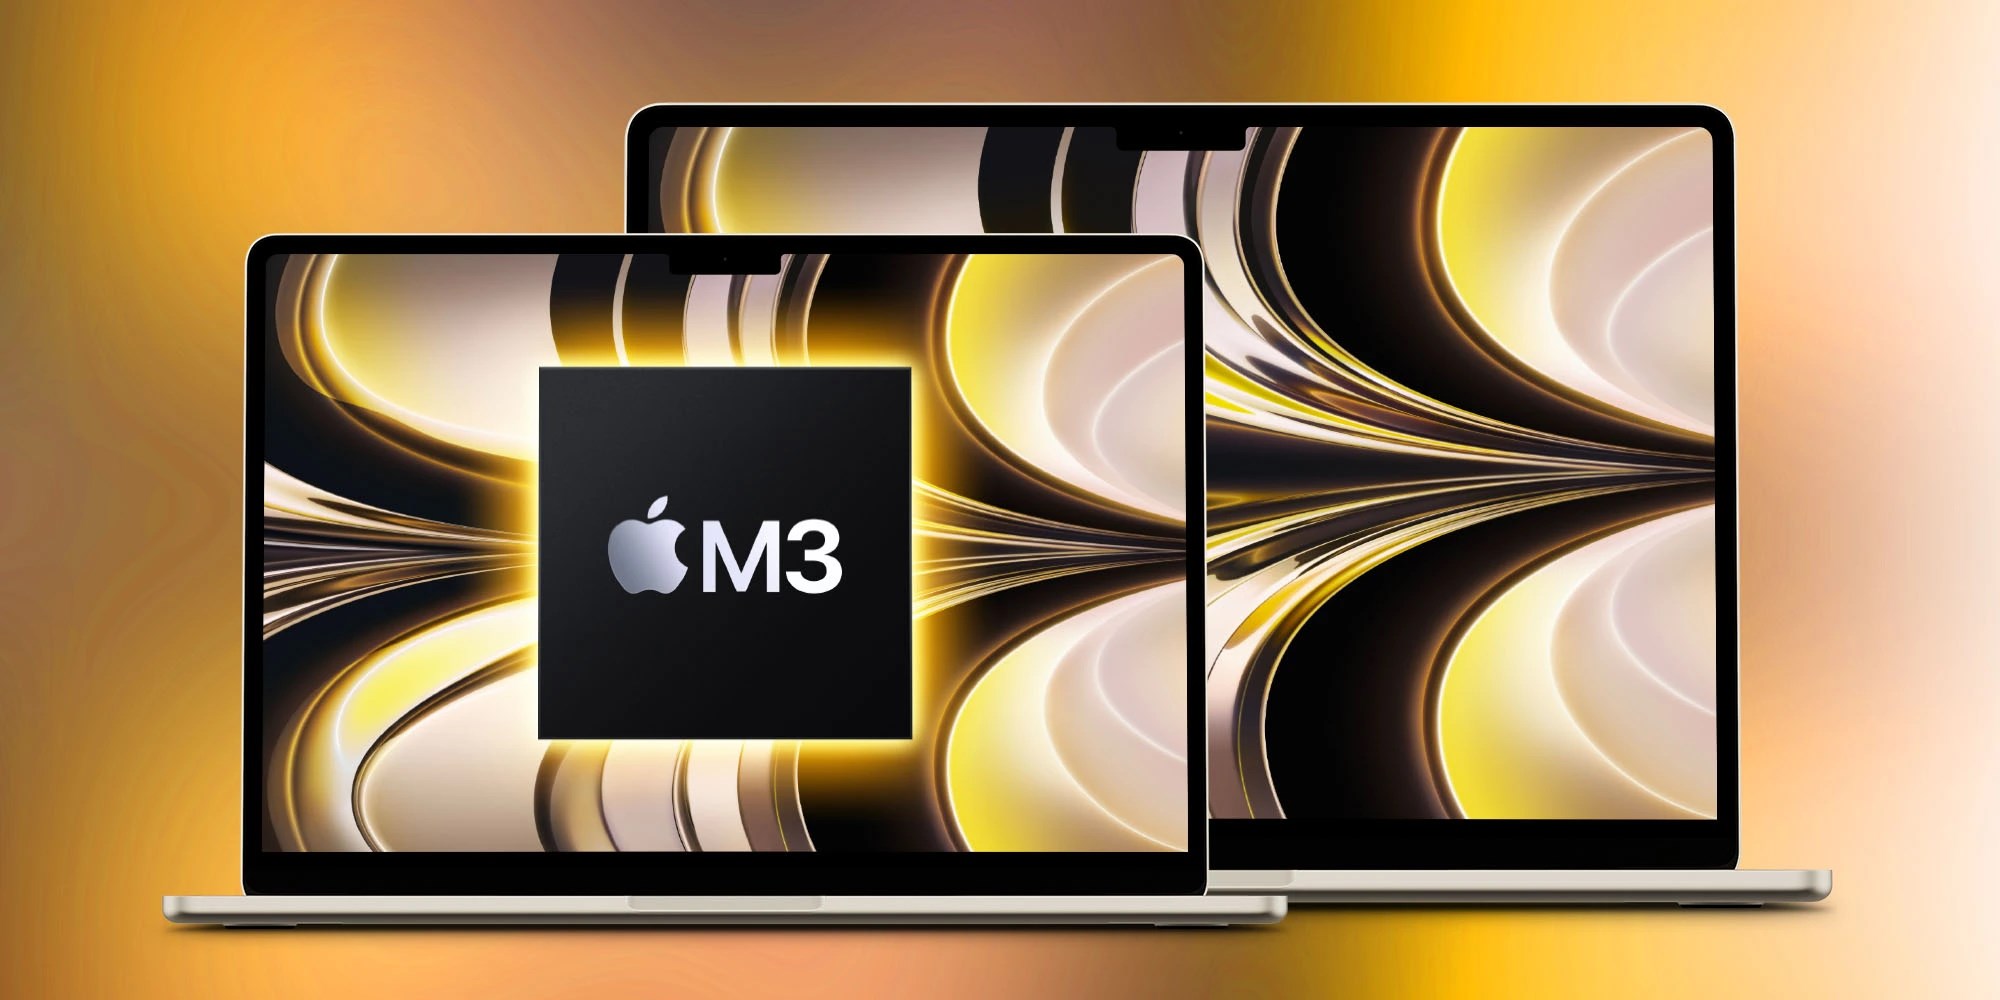 15 inç MacBook Air M3 çip model geliyor